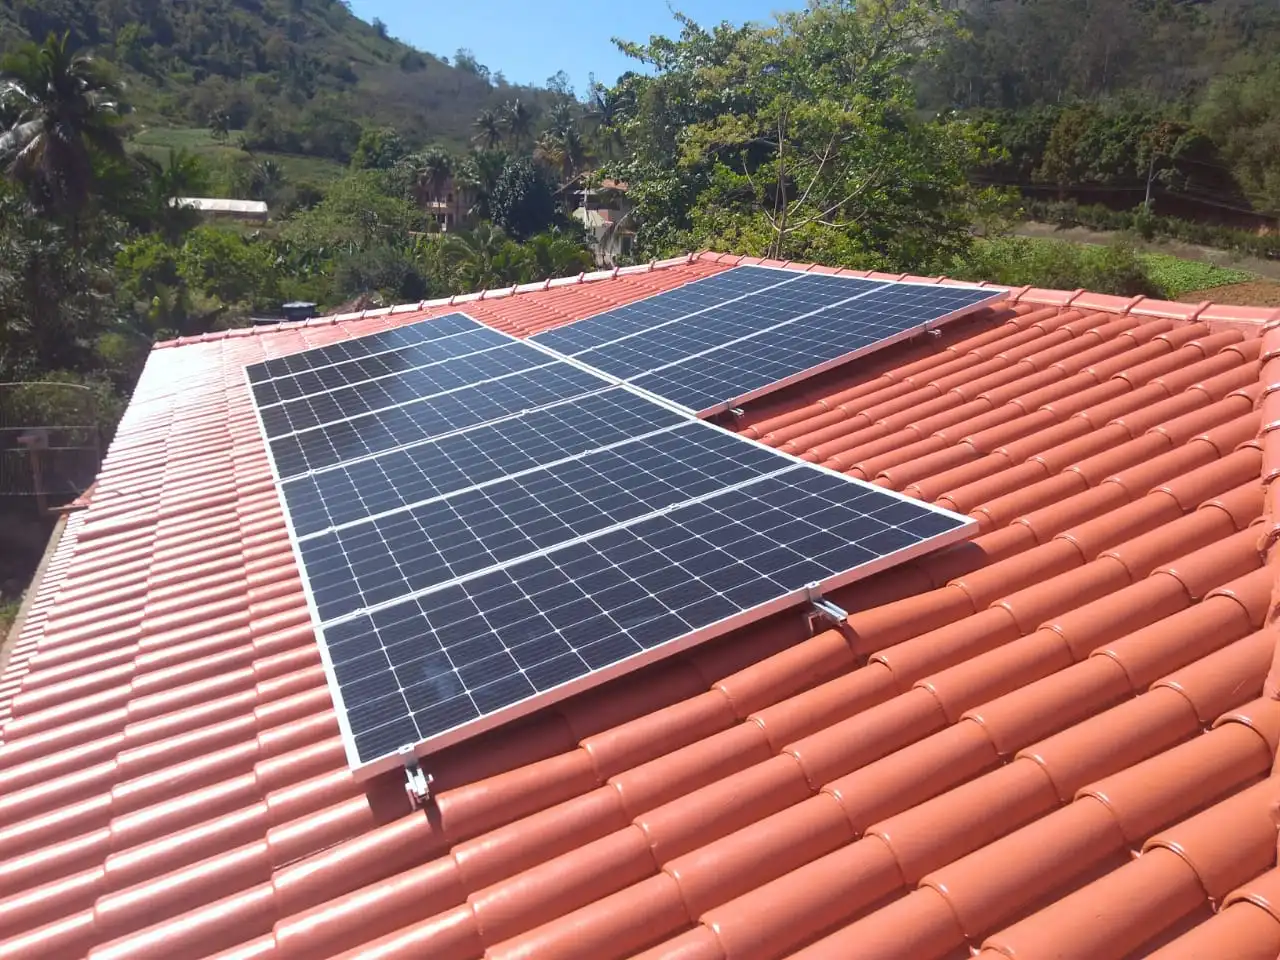 Residencia com energia fotovoltaica após o novo marco legal da geração distribuída